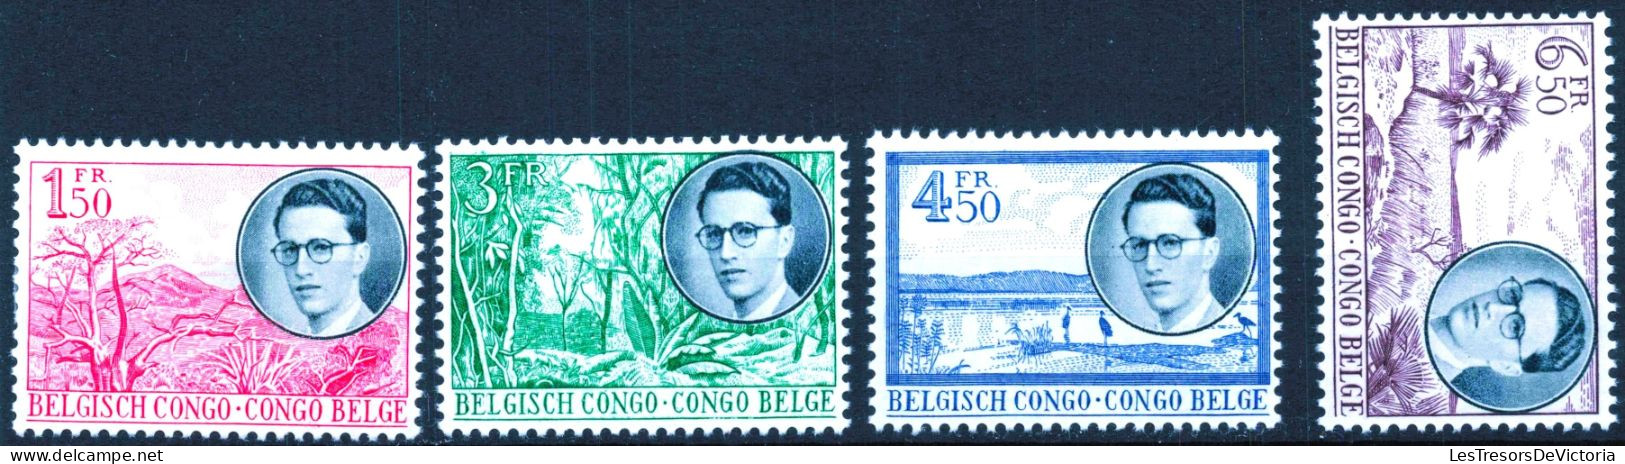 Timbre - Belgique - COB 329/36* -1955 - Voyage Royal Au Congo Predominance Néerlandaise Et Française - Cote 32 - Ungebraucht